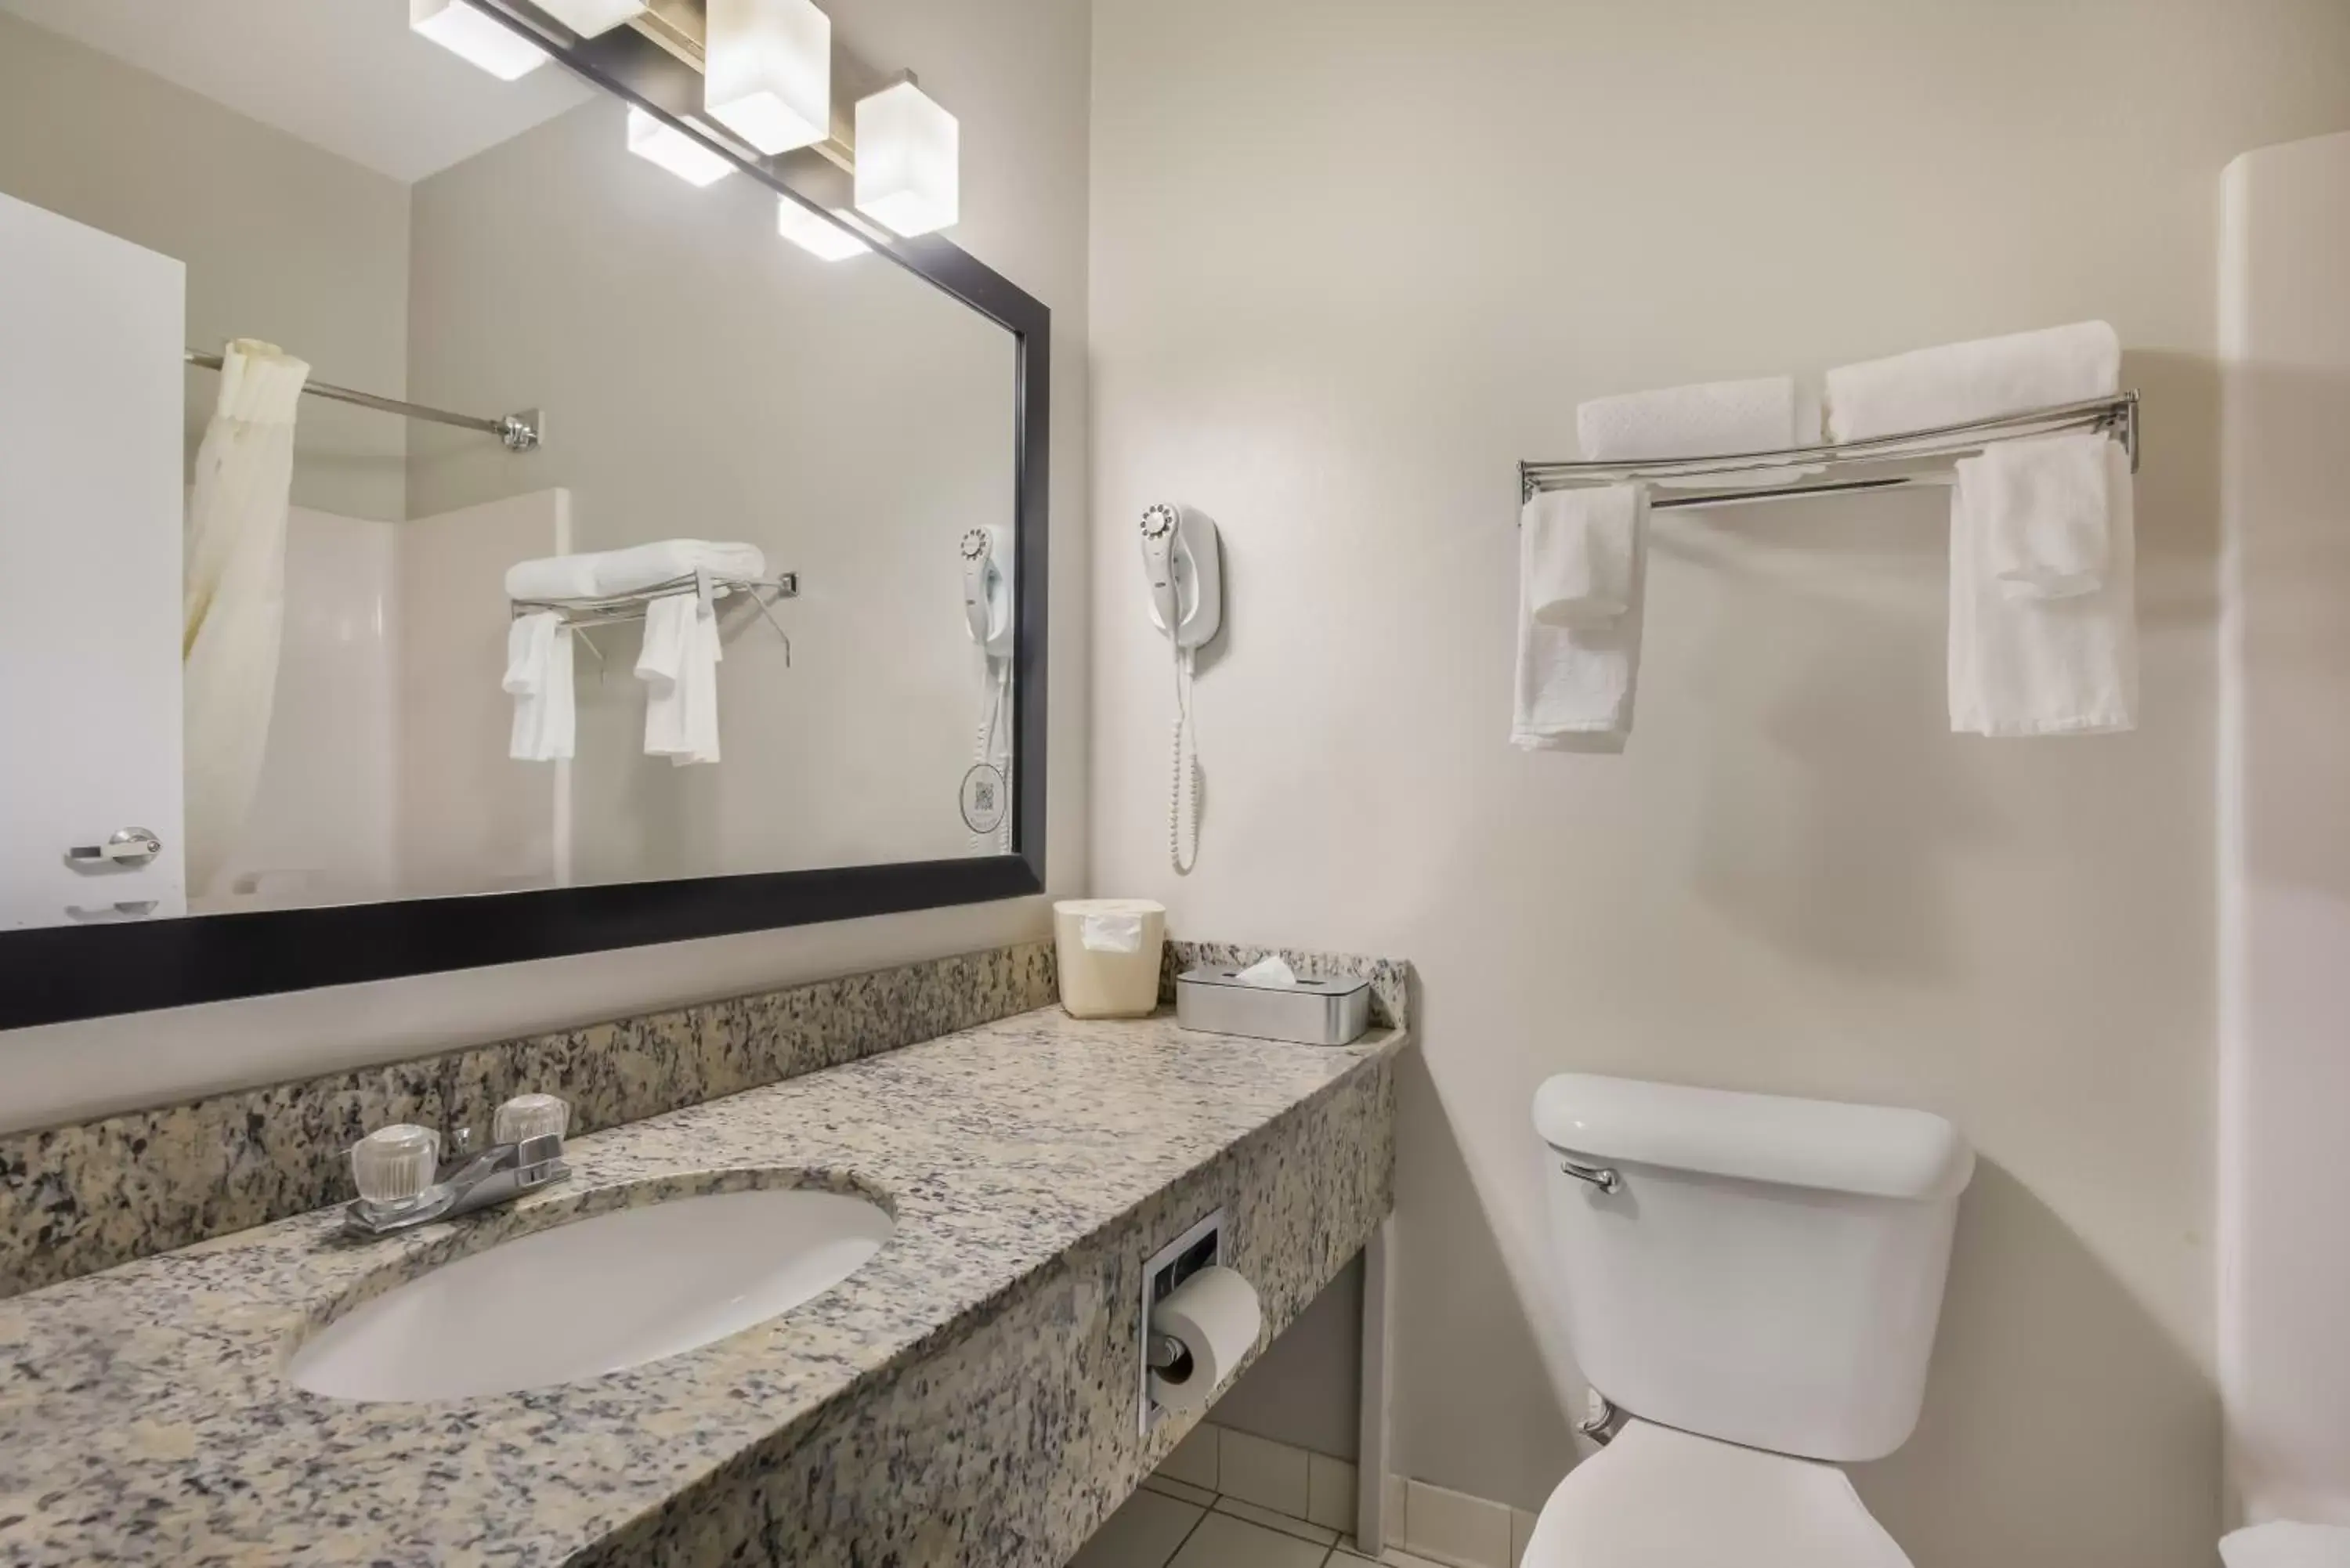 Bathroom in MainStay Suites Joliet I-55